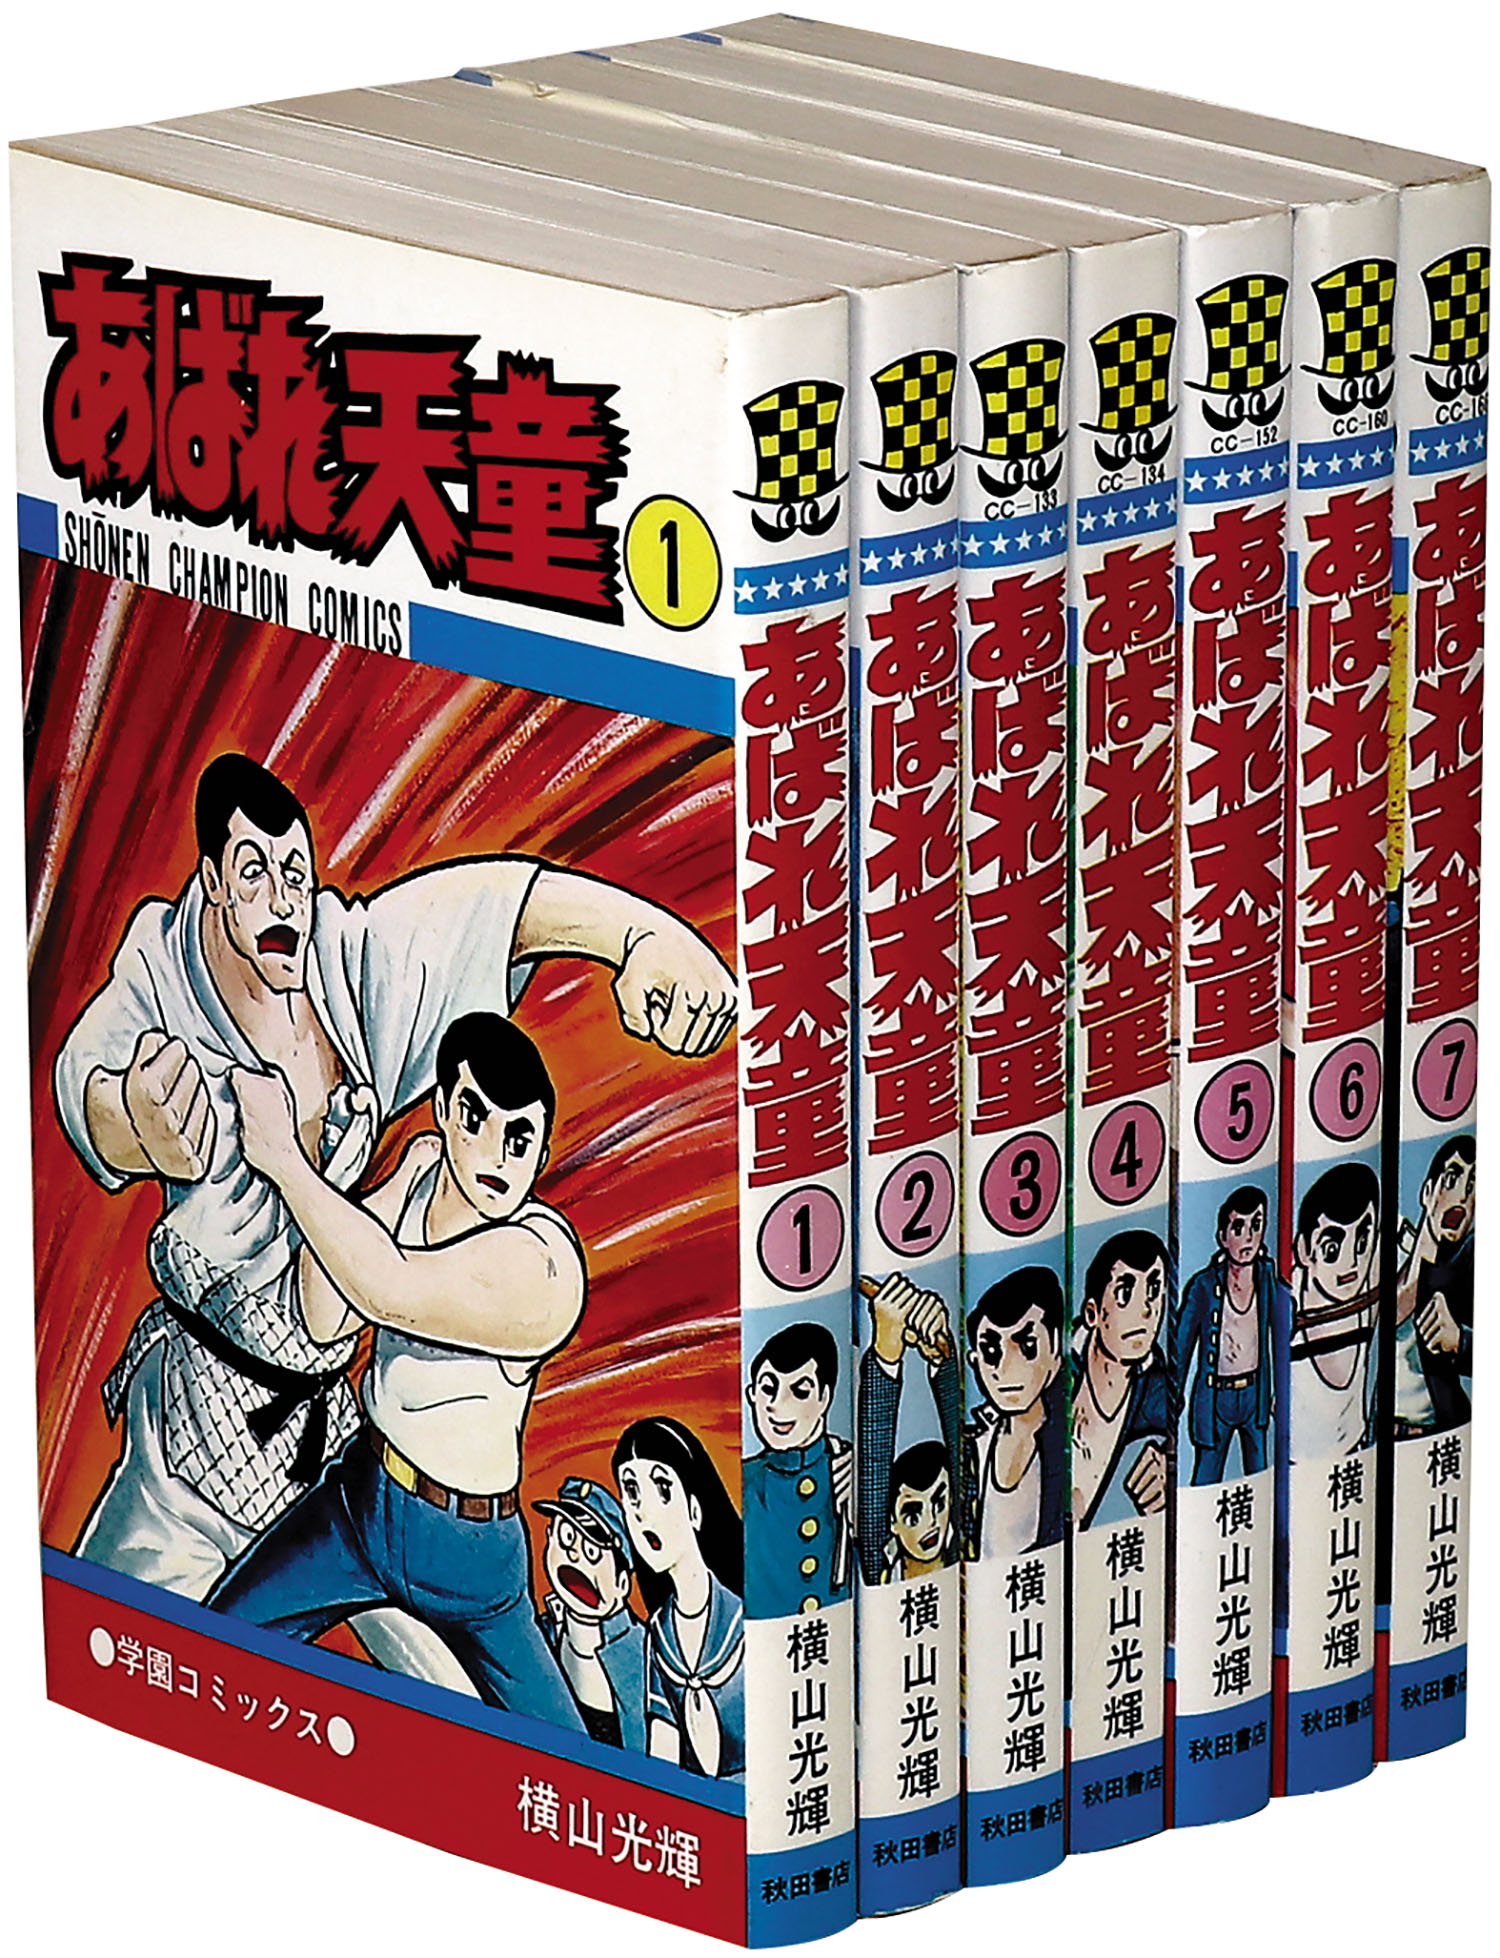 少年チャンピオンコミックス/横山光輝「あばれ天童全7巻初版セット」